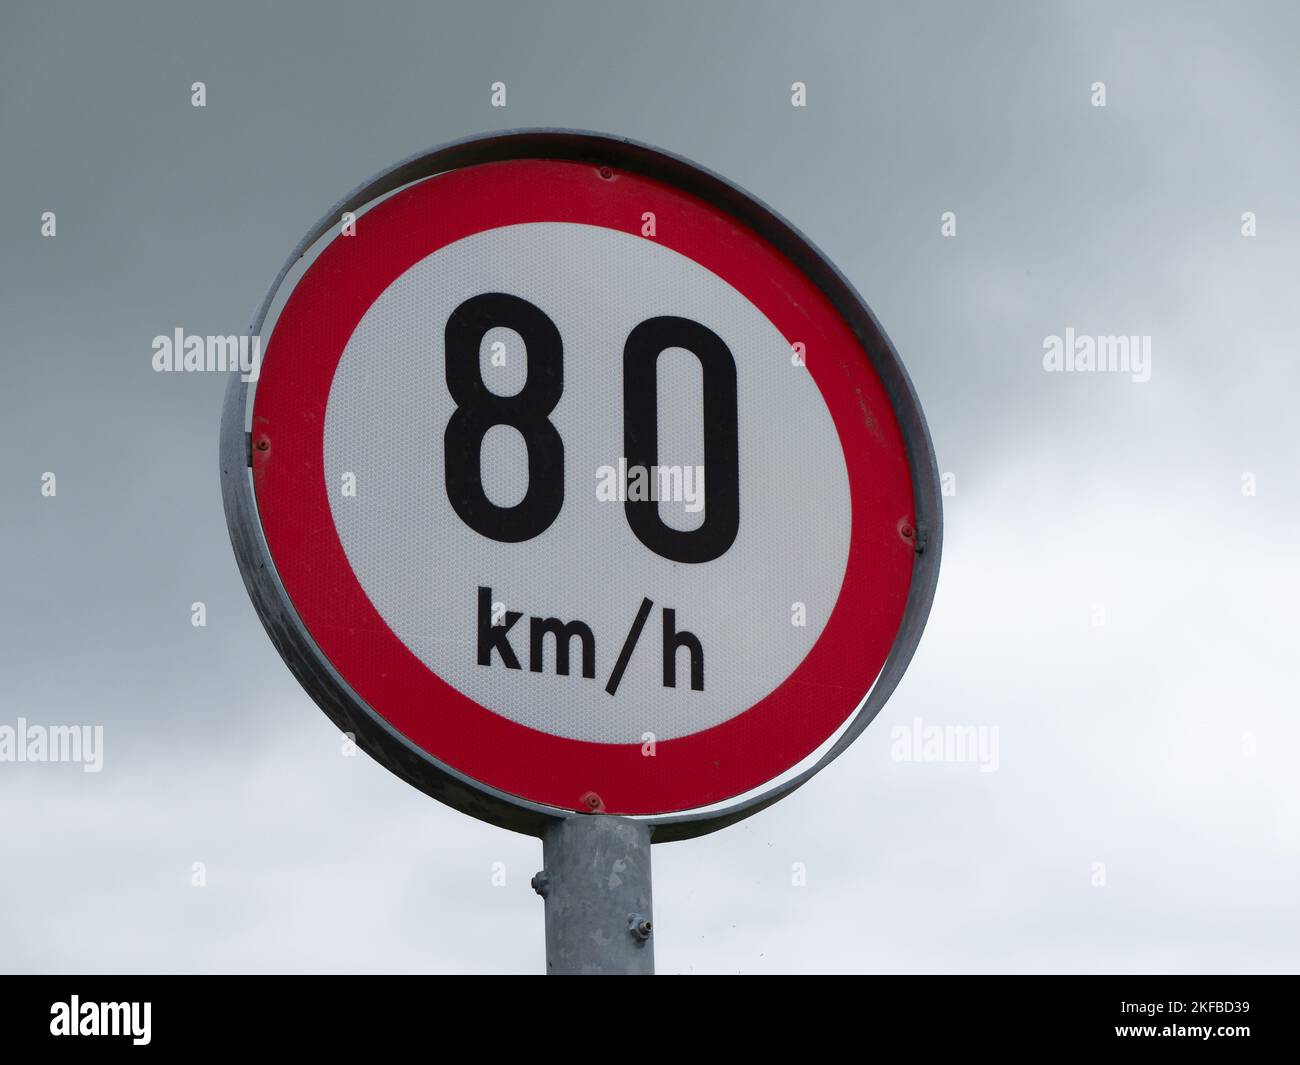 Rundes Straßenschild, das die Geschwindigkeit auf dem Hintergrund eines bewölkten Himmels begrenzt. Schilder, die auf eine Höchstgeschwindigkeit von 80 km h hinweisen Stockfoto